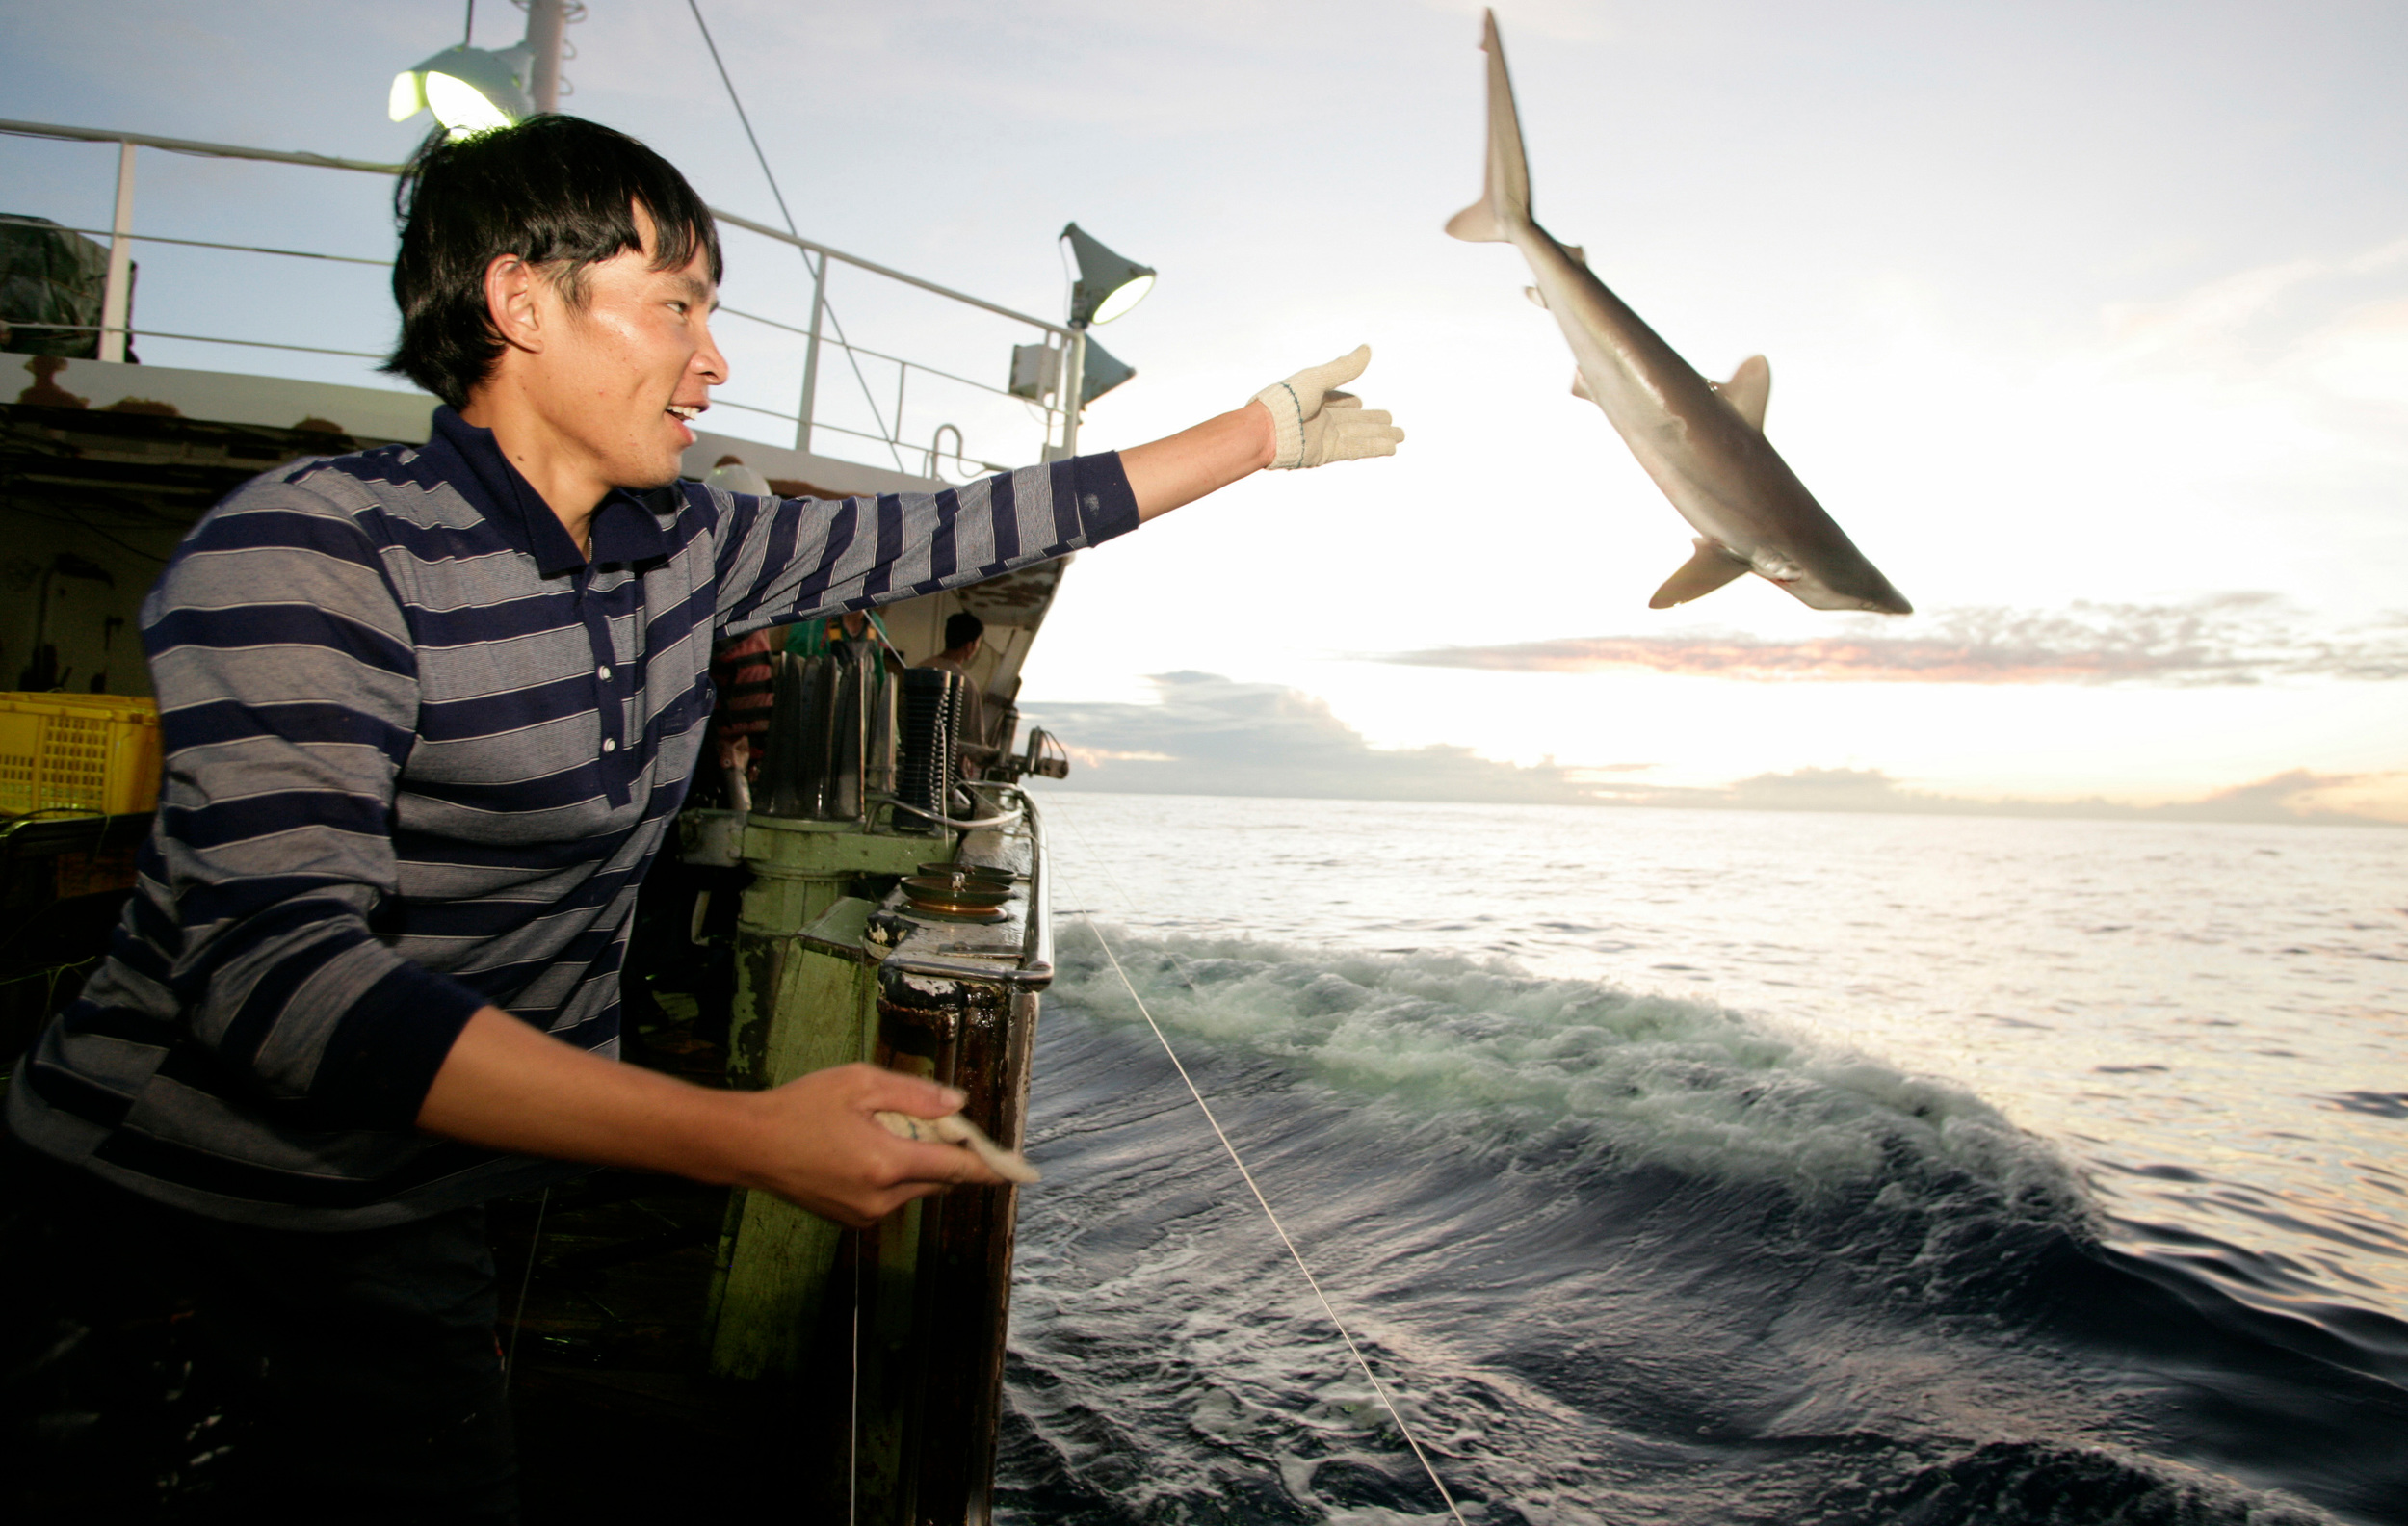 Fisher lanza tiburón fuera del barco